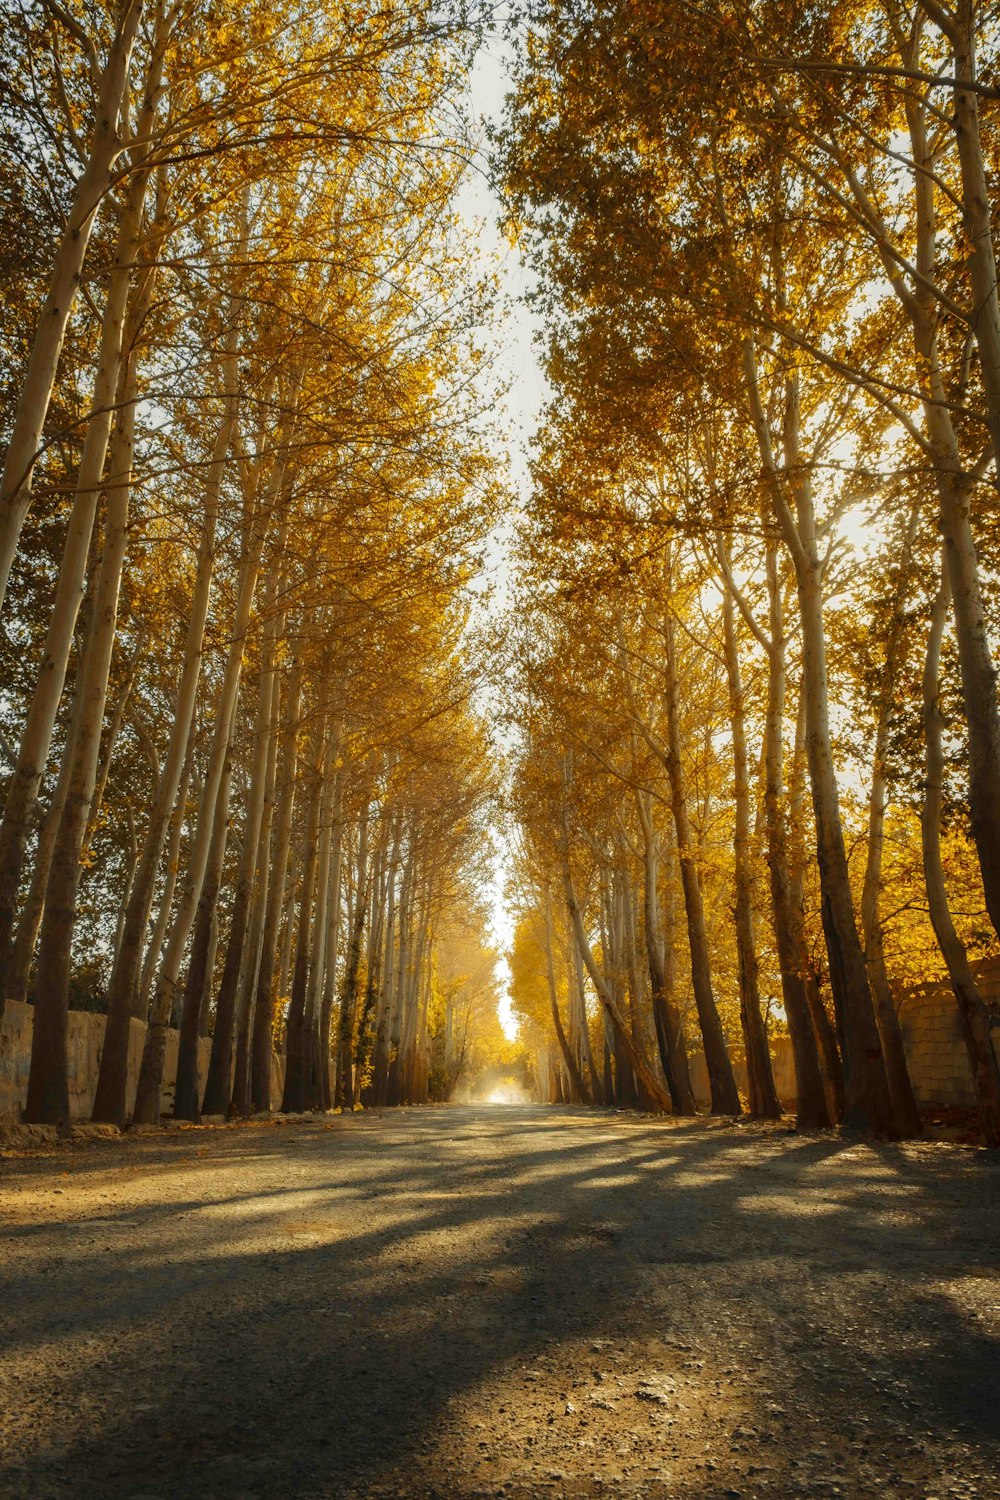 eine unbefestigte Straße, umgeben von Bäumen mit gelben Blättern